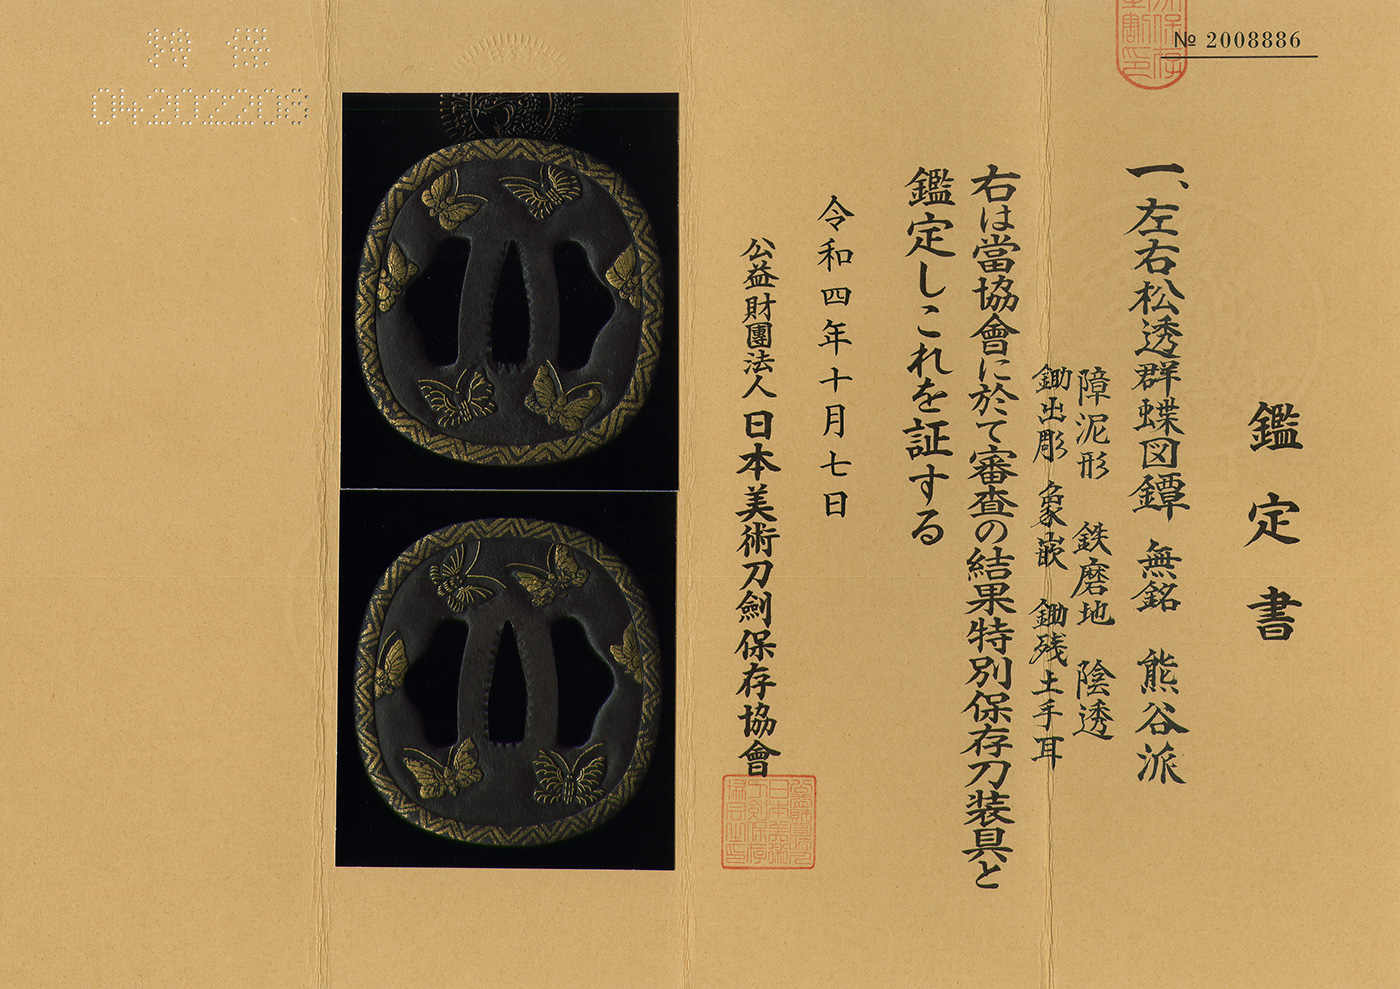 刀の鍔 鐔 つば 鉄地 銘あり 珍しい図柄 江戸時代 - 武具